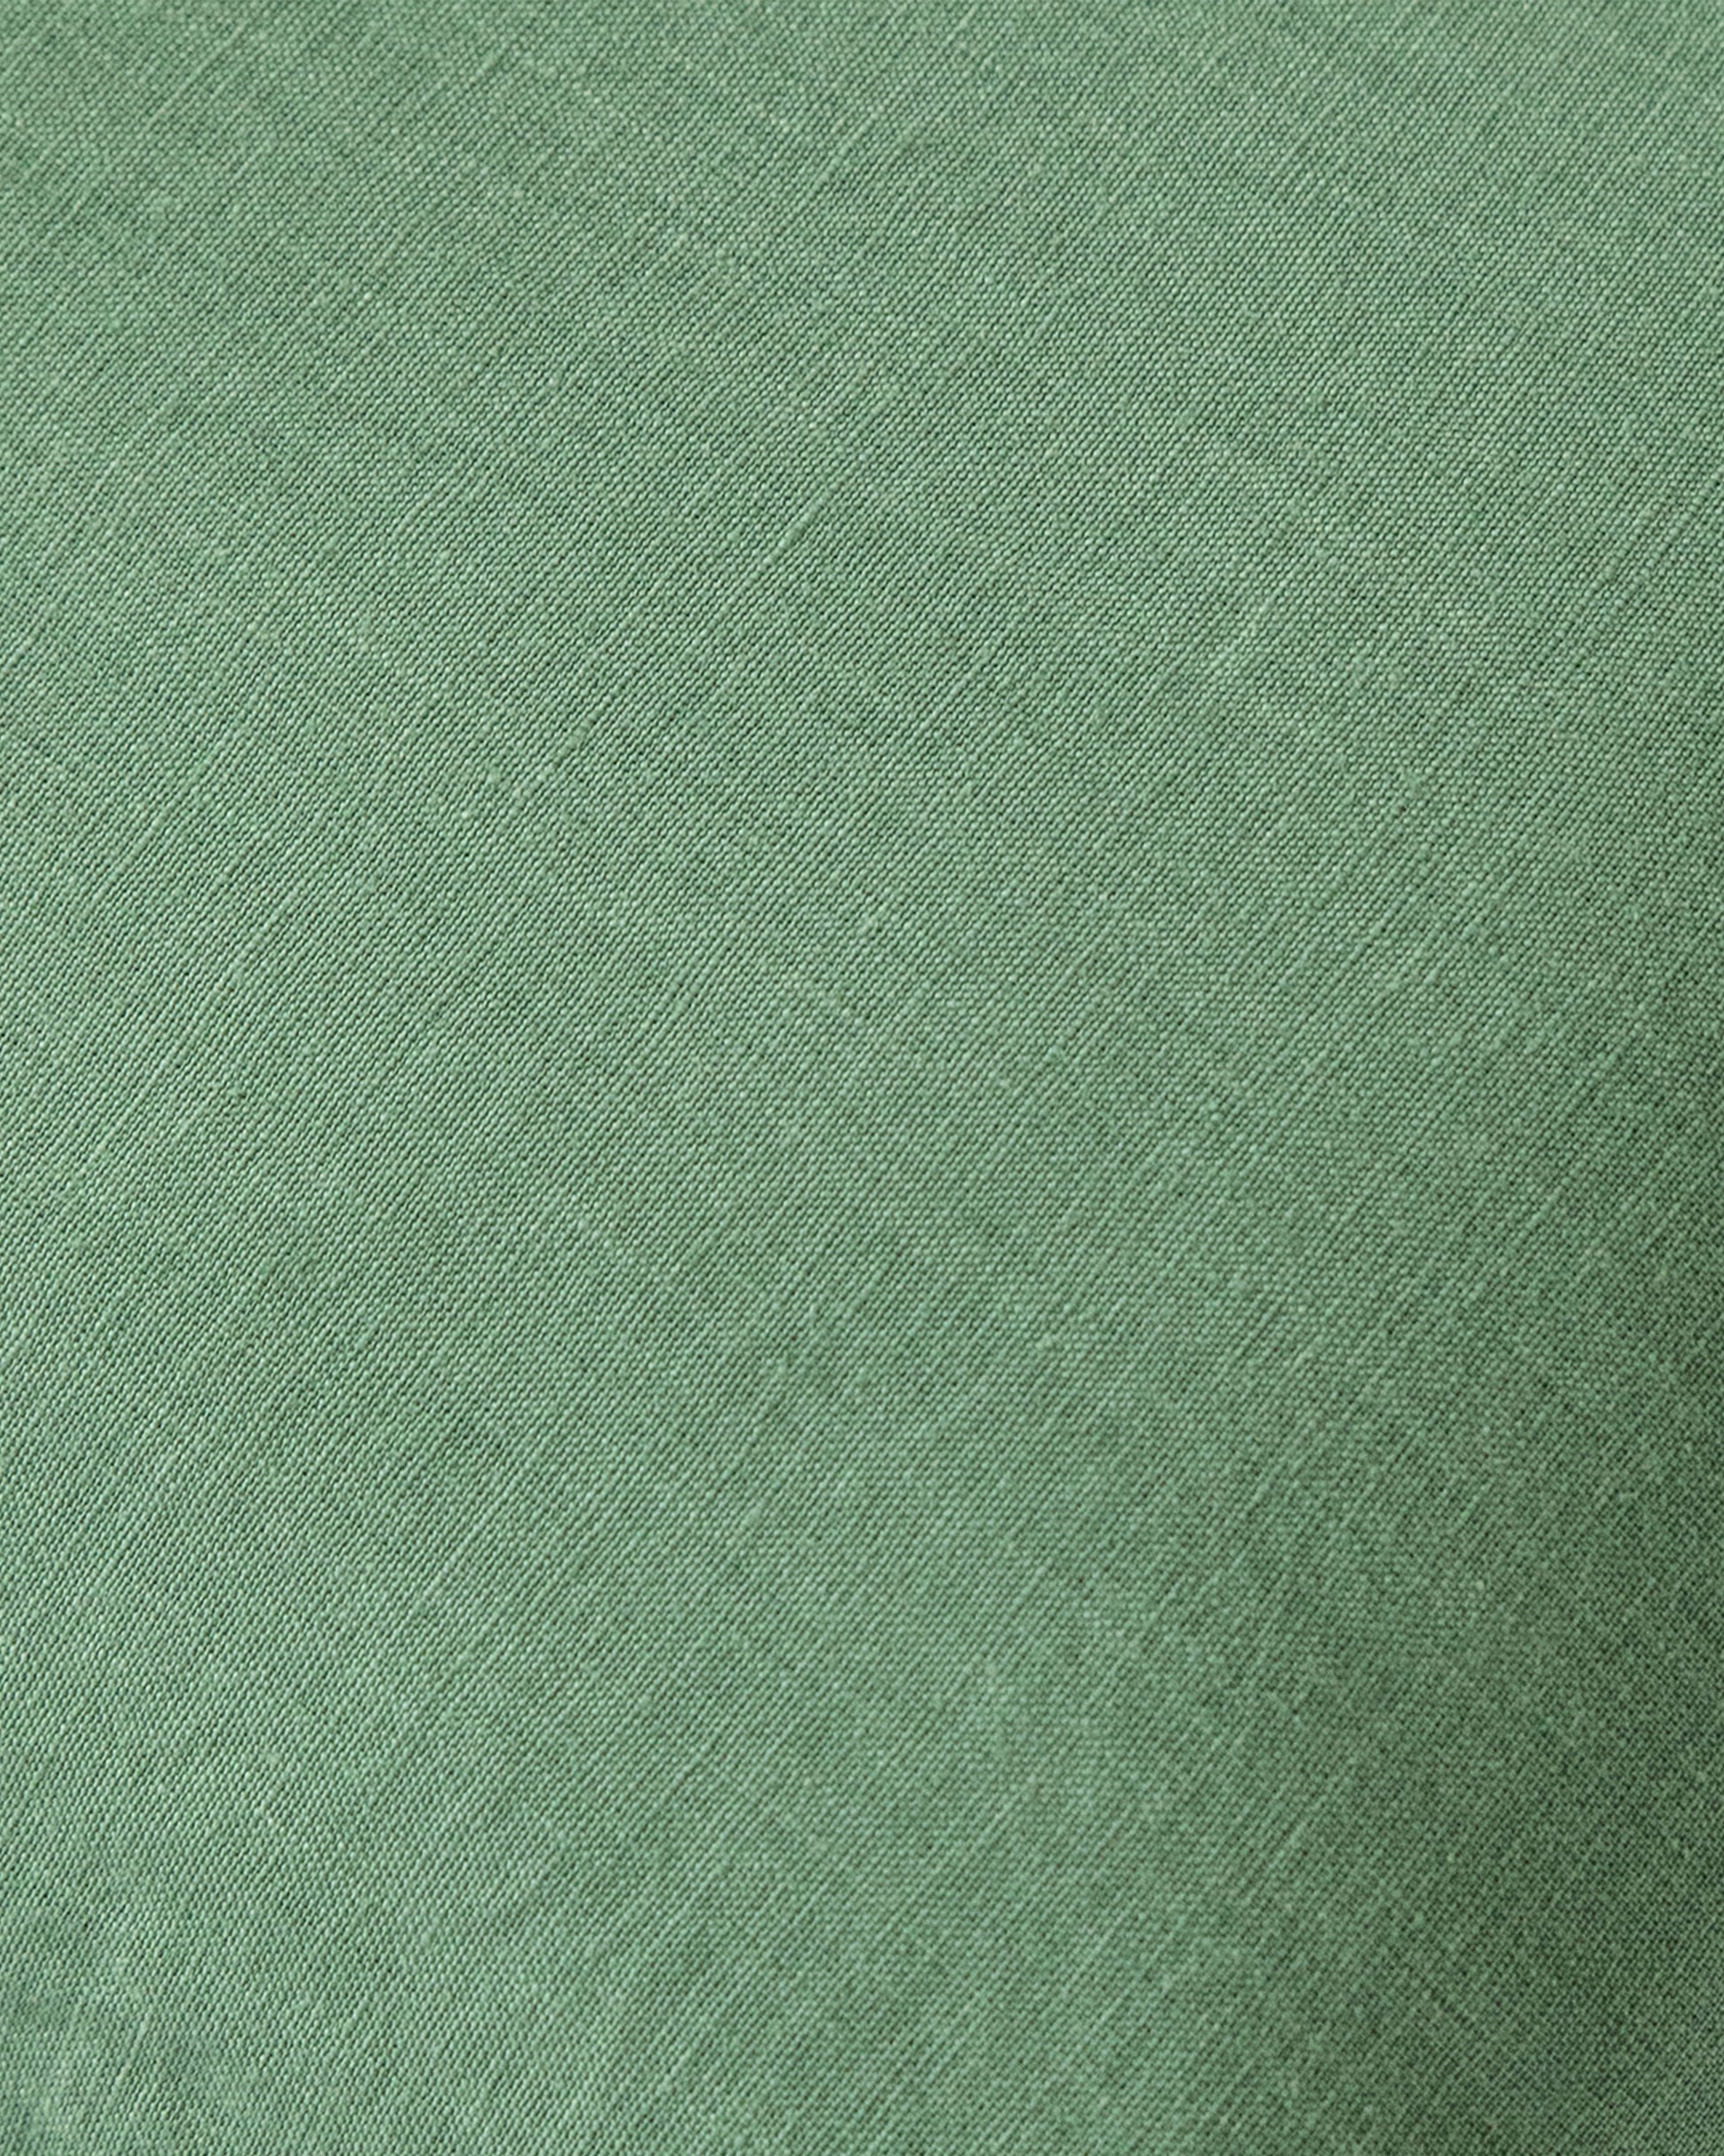 https://magiclinen.com/cdn/shop/products/matcha-green-tea-towel-1.jpg?v=1676625290&width=1946